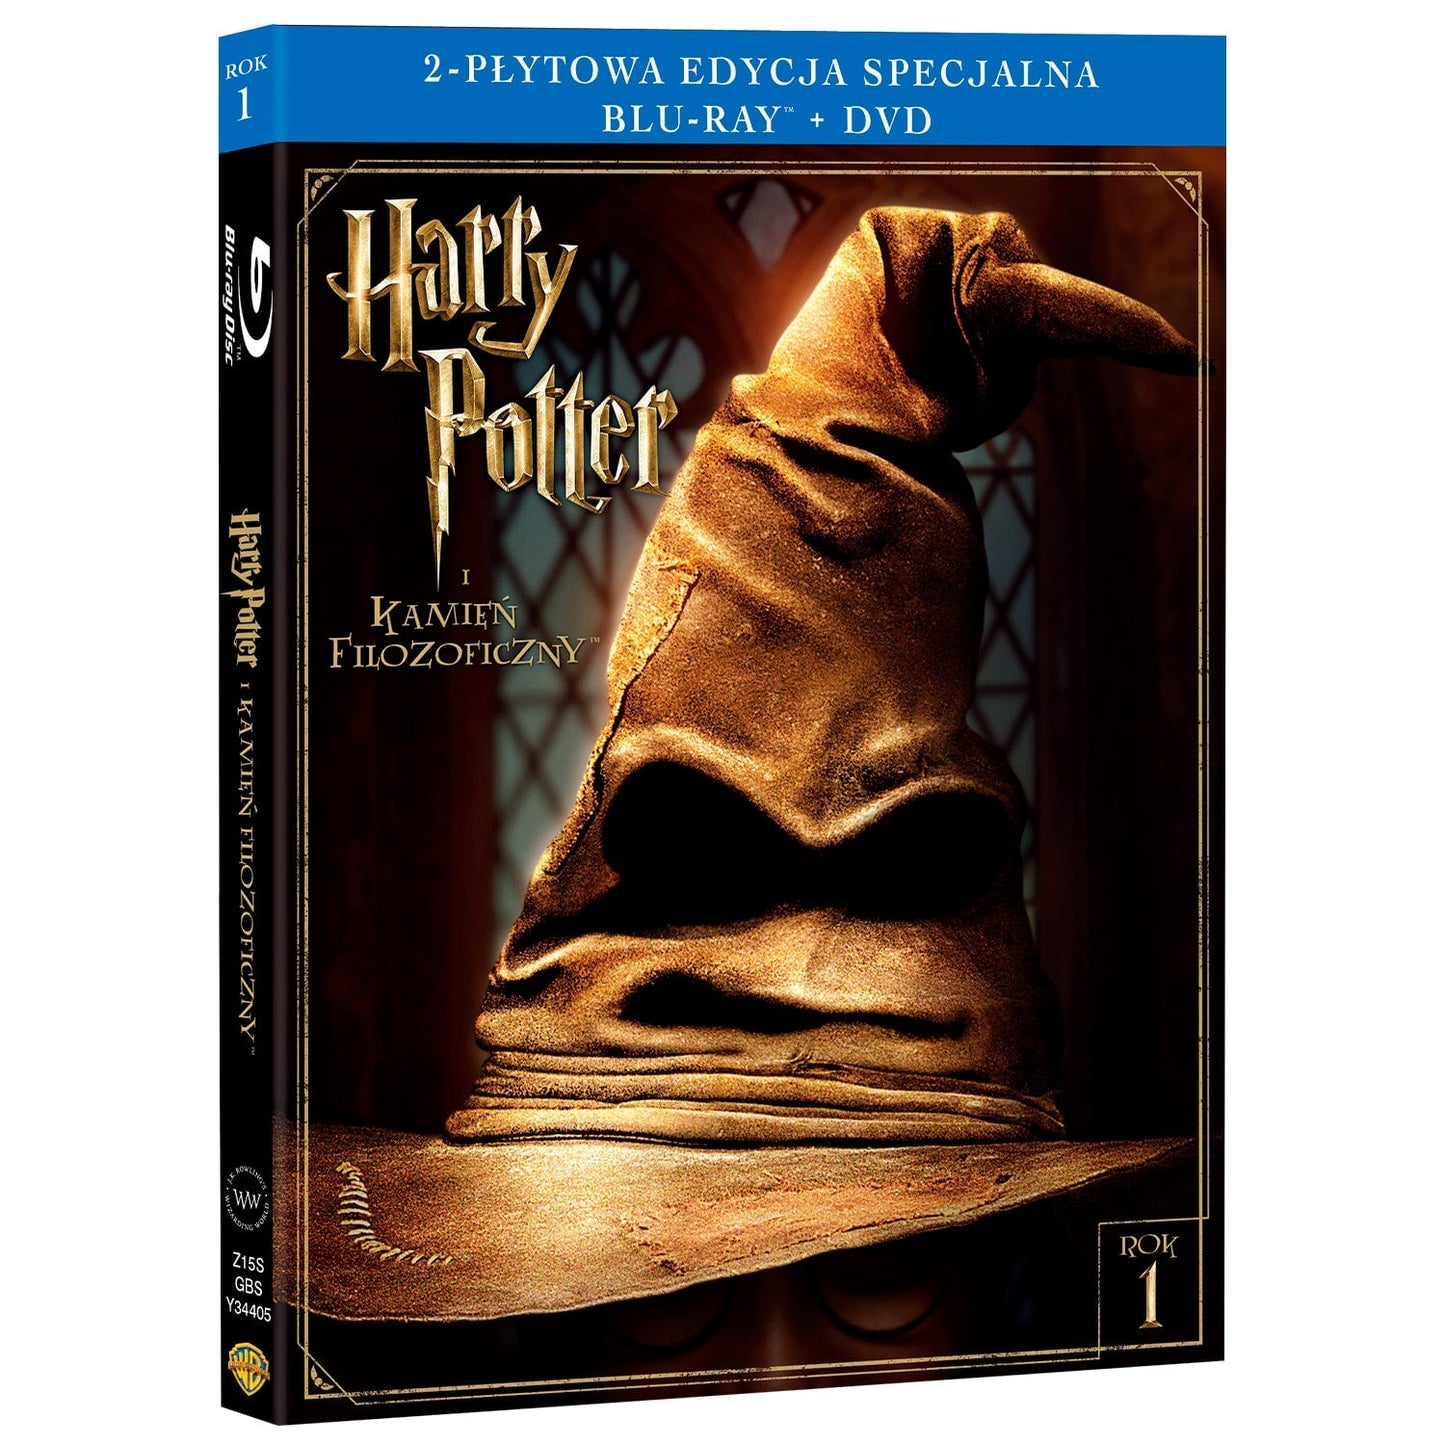 Гарри Поттер и философский камень (Blu-ray + DVD)